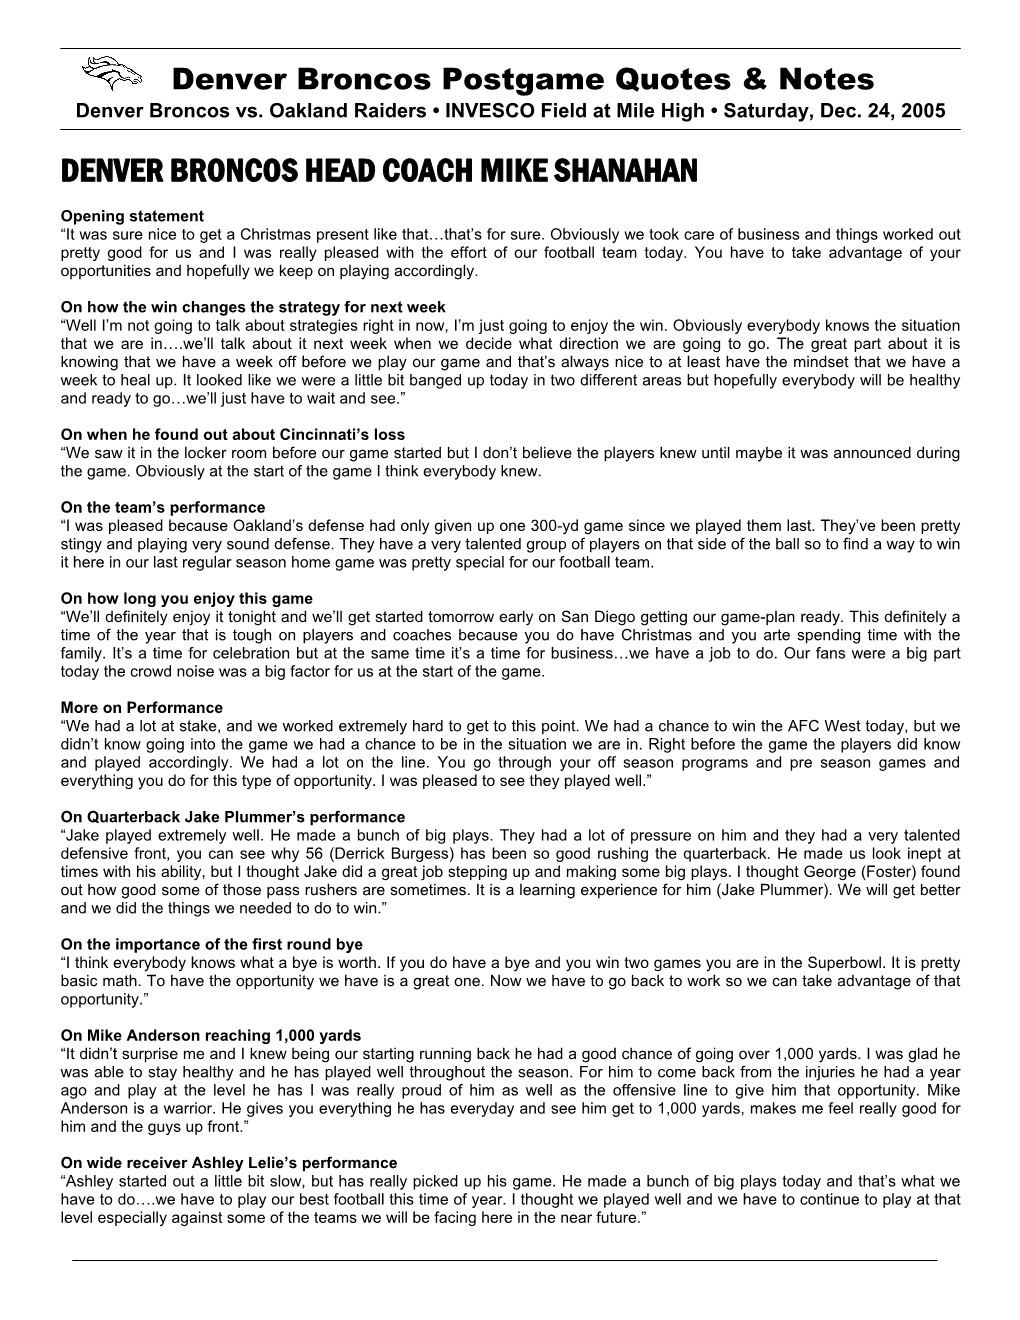 Denver Broncos Head Coach Mike Shanahan